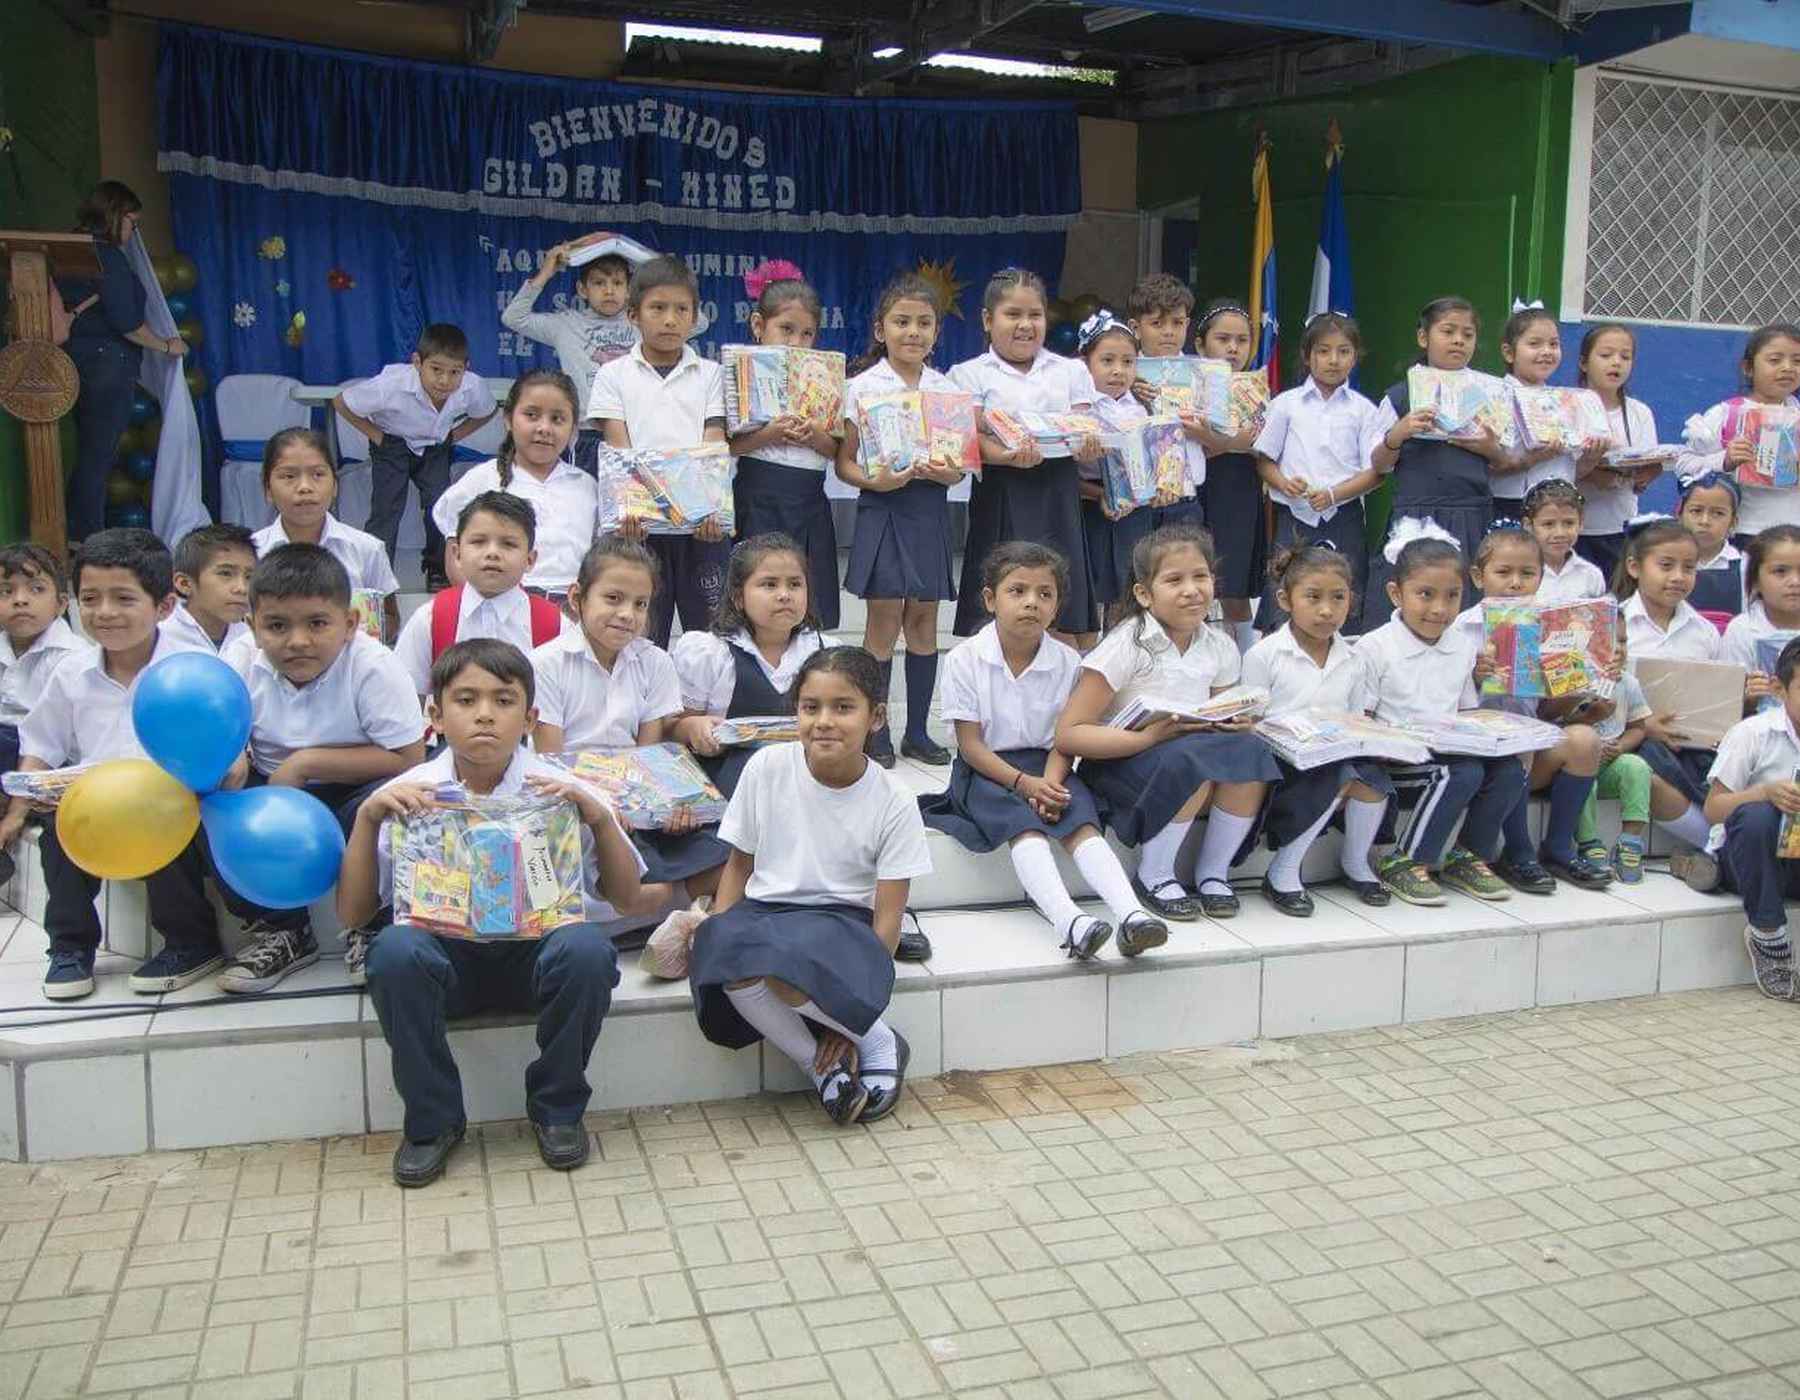 Les enfants portent des uniformes scolaires et sourient tout en tenant des fournitures scolaires.